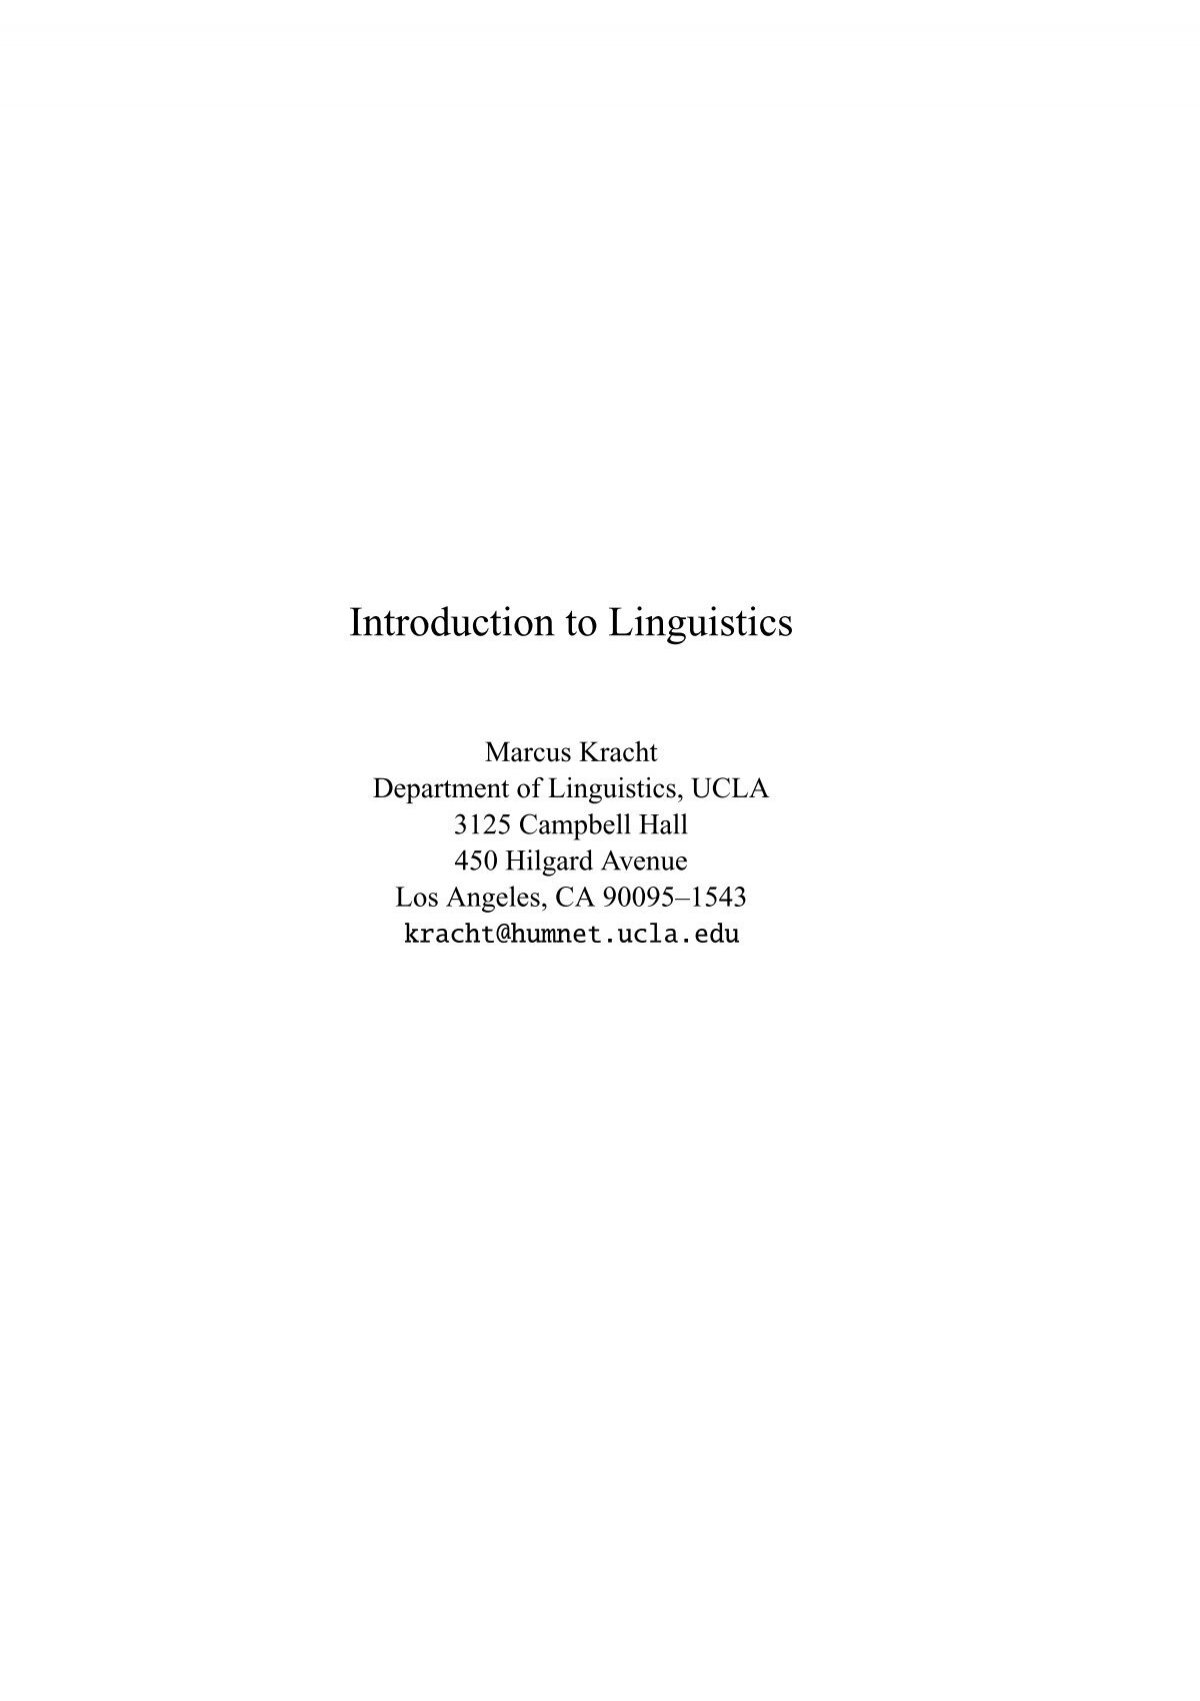 ucla linguistics dissertations